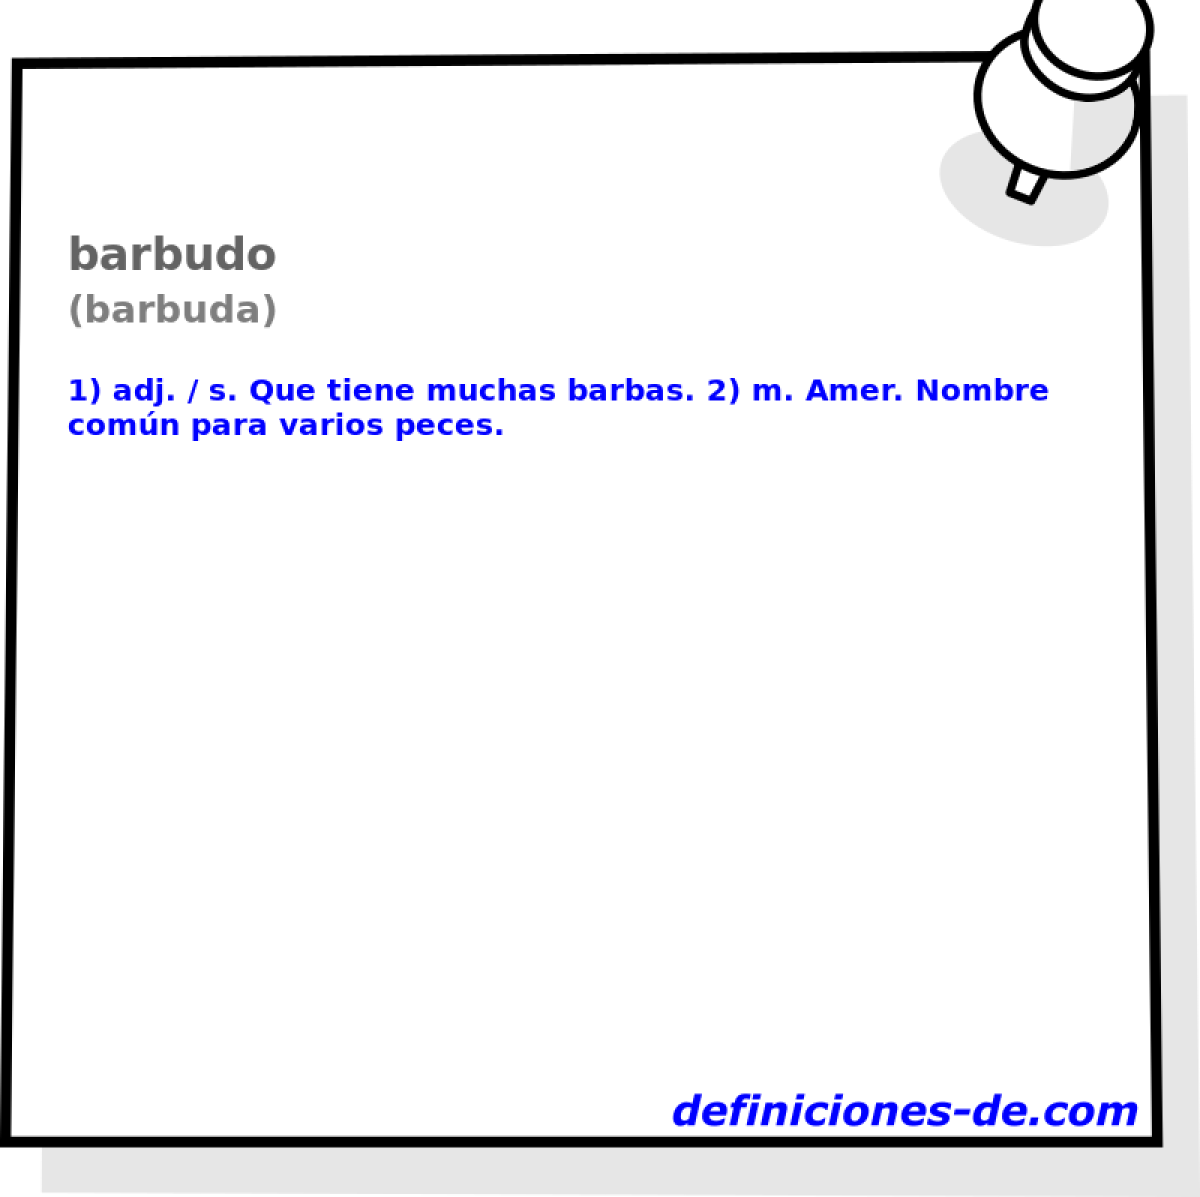 barbudo (barbuda)